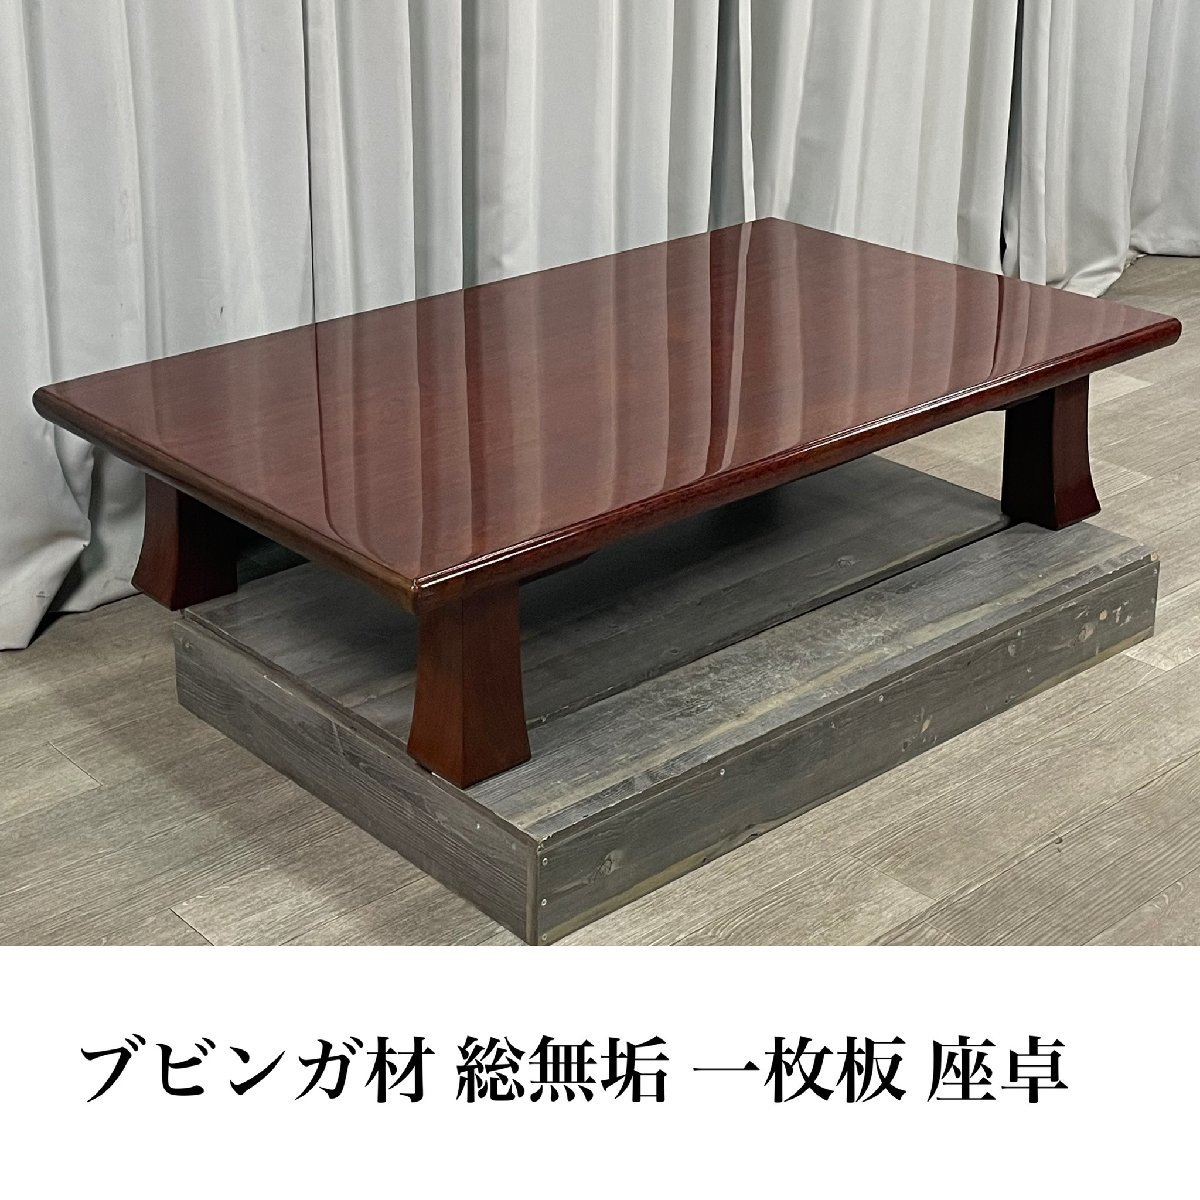 堅実な究極の 和家具 卓袱台 ちゃぶ台 ローテーブル 座敷机 / 座卓 総